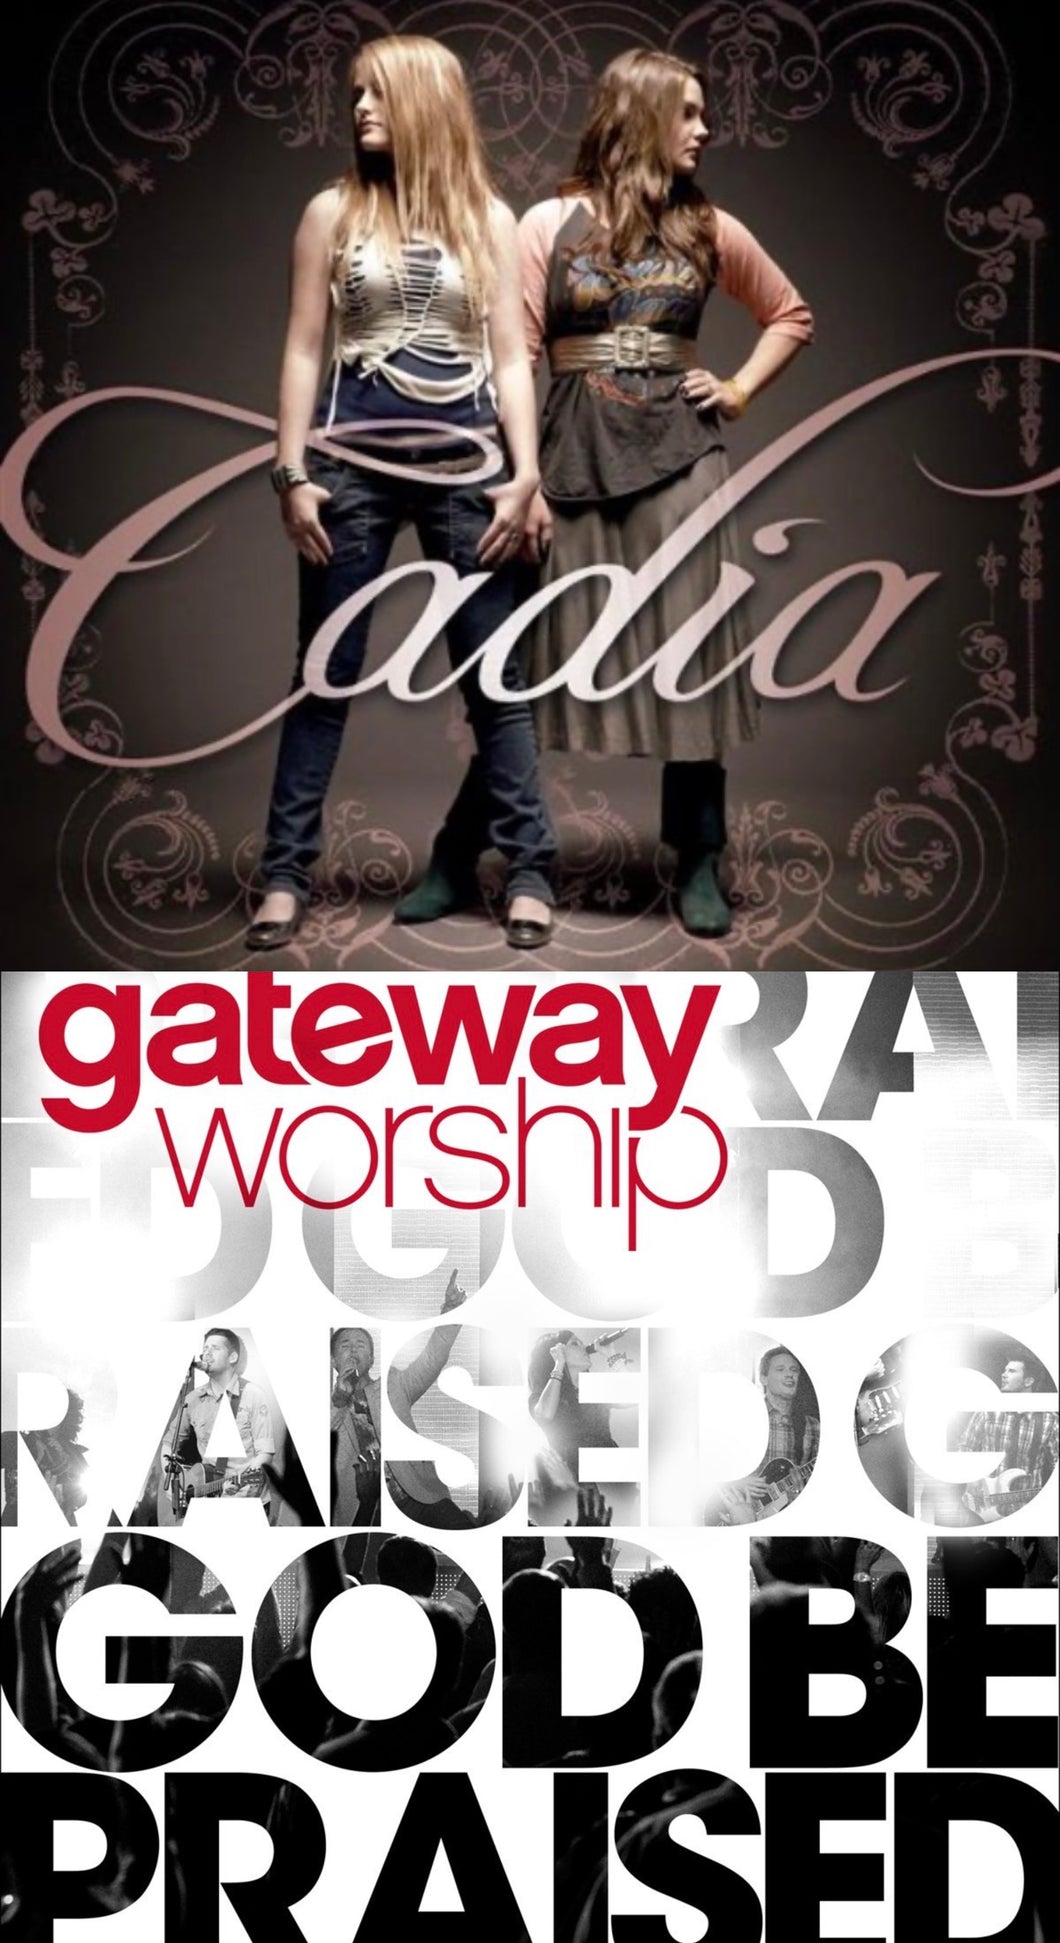 Cadia + Gateway Worship God Be Praised 2CD